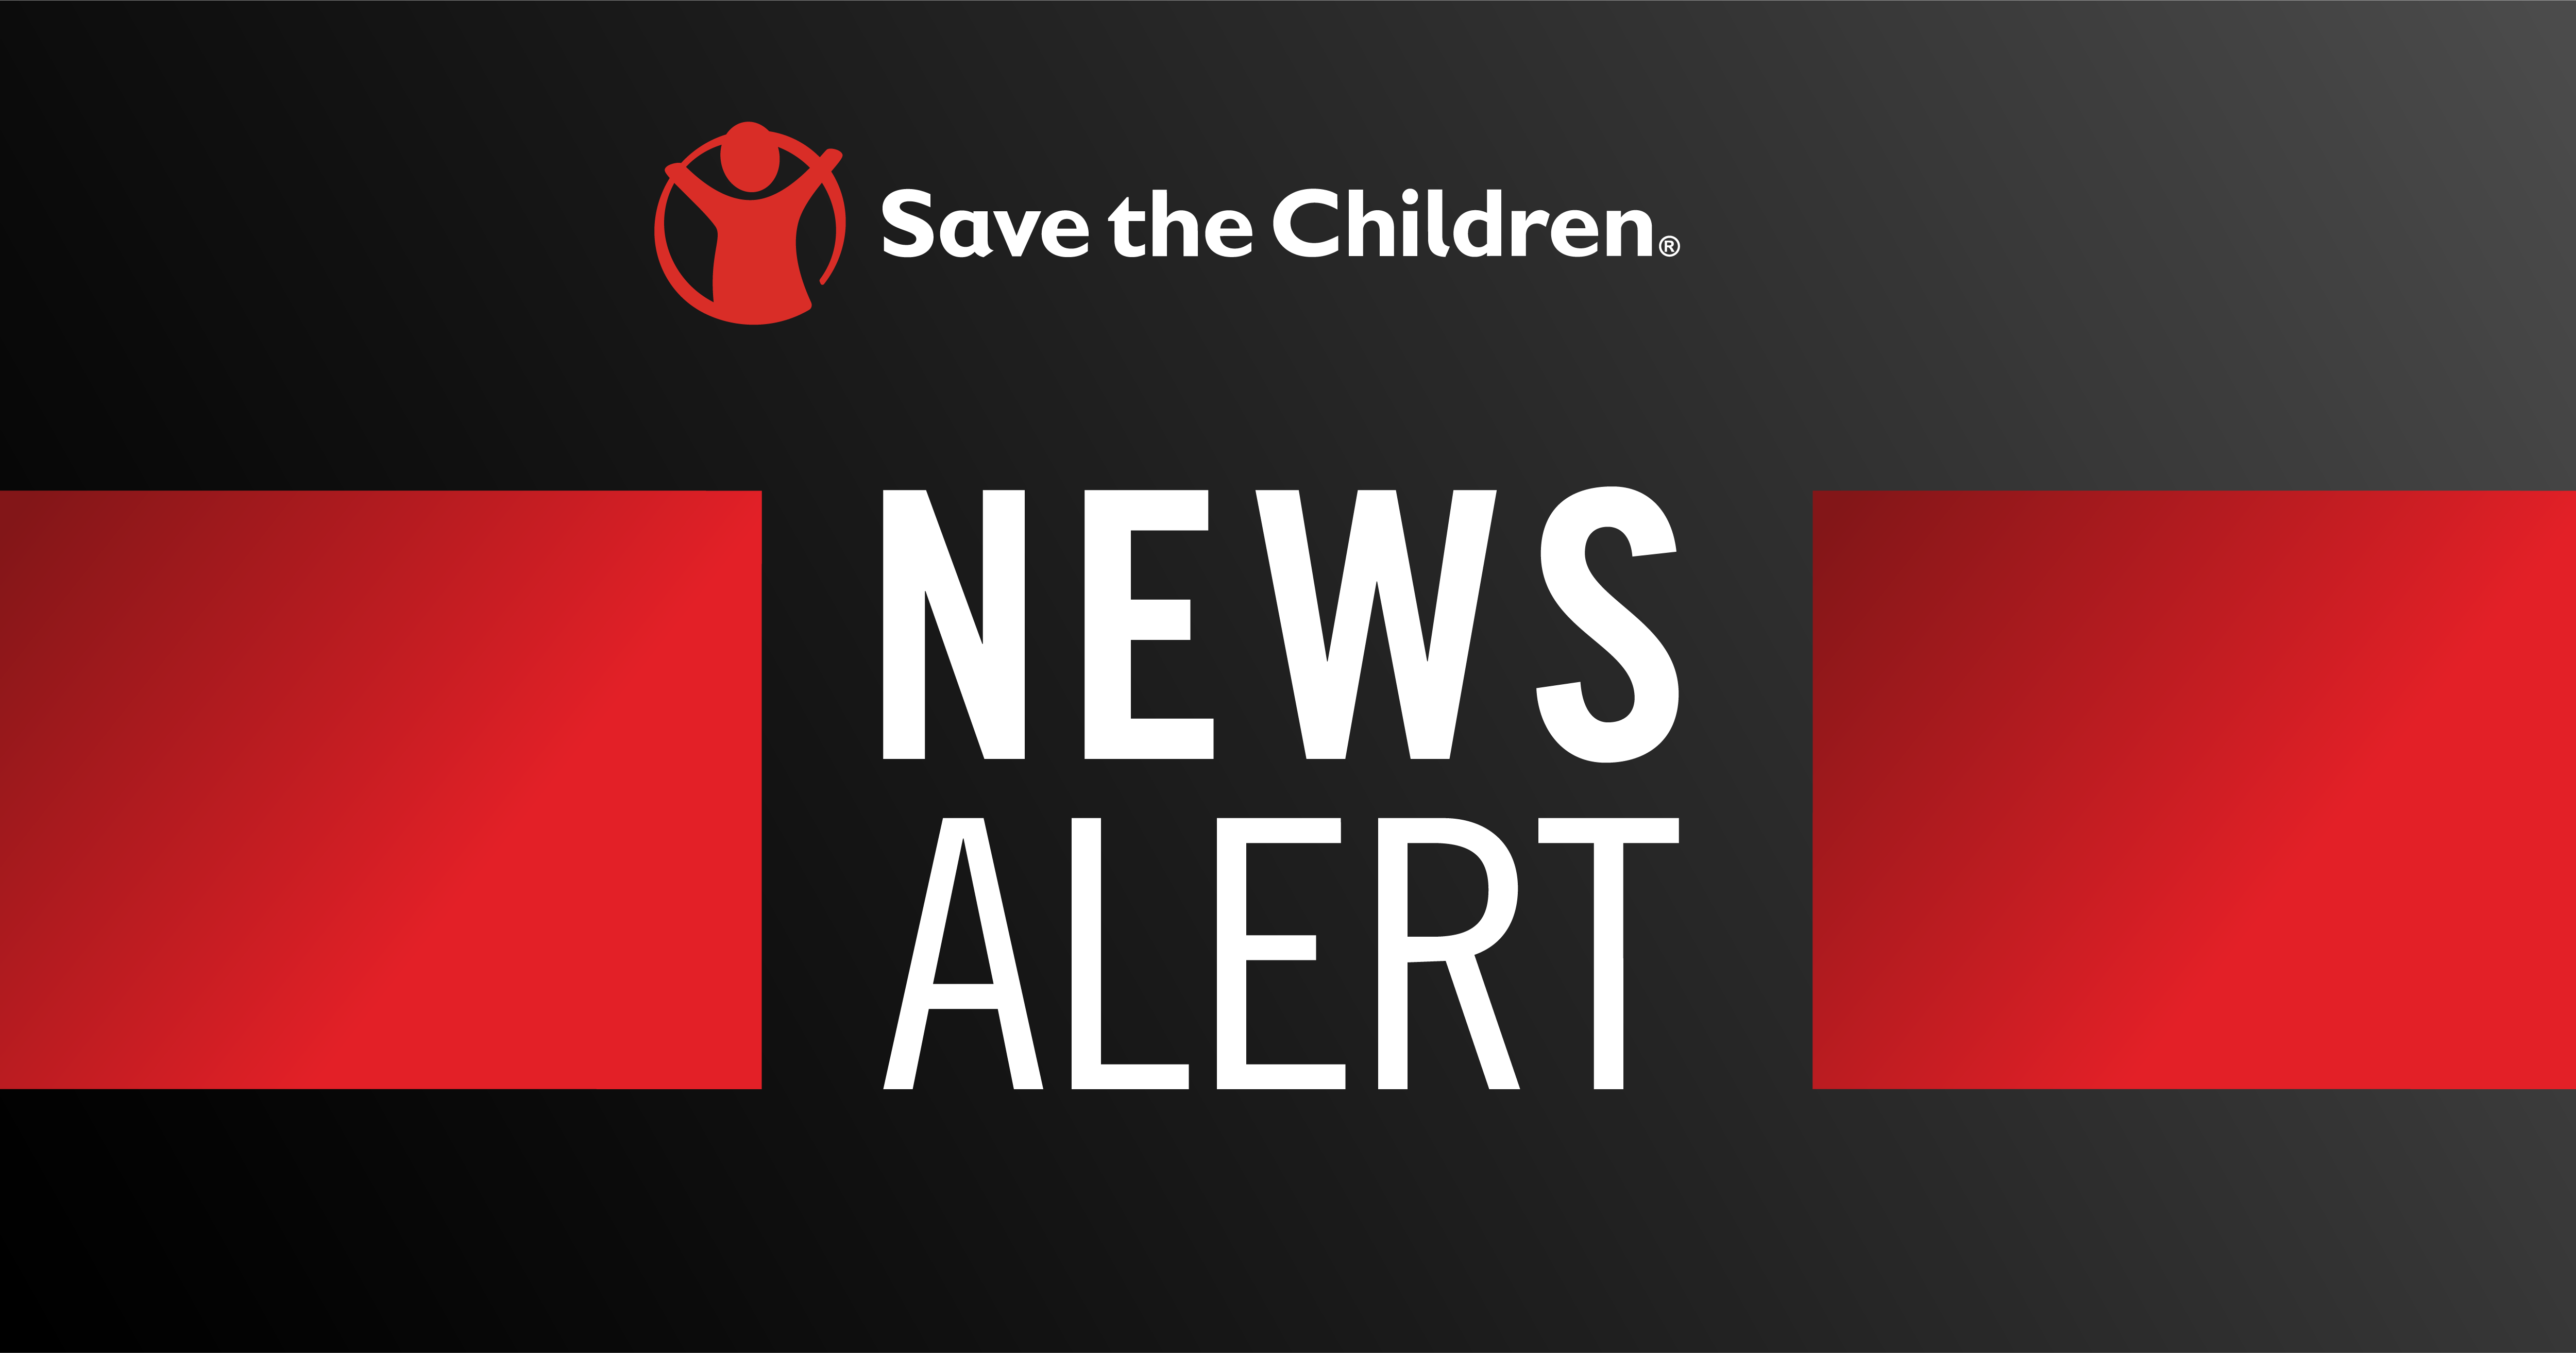 Save the Children News Alert Graphic